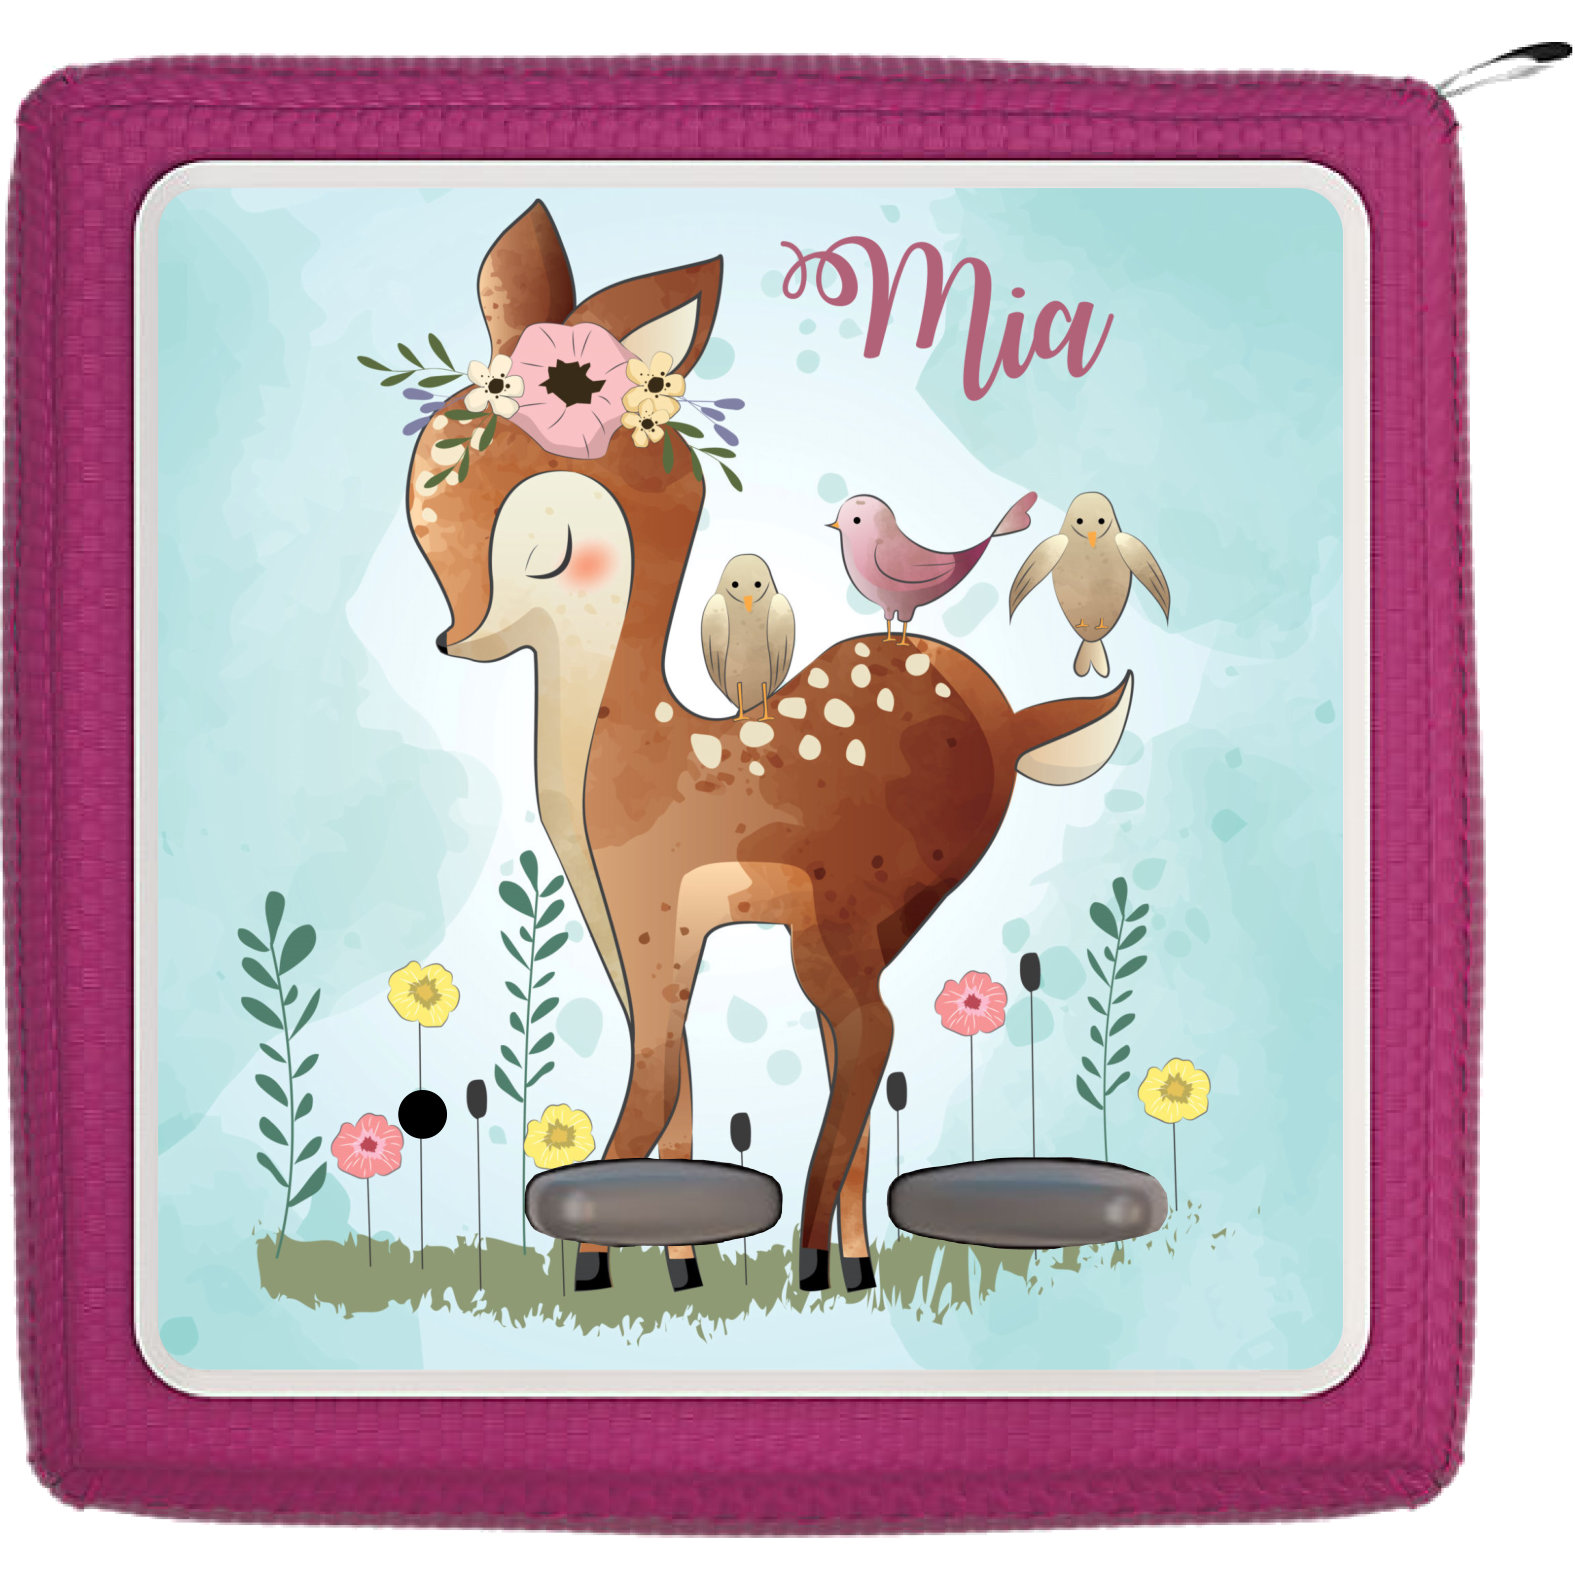 TheSmartGuard Schutzfolie passend f/ür die Toniebox Fuchs im Wald mit Name personalisiert Folie Sticker